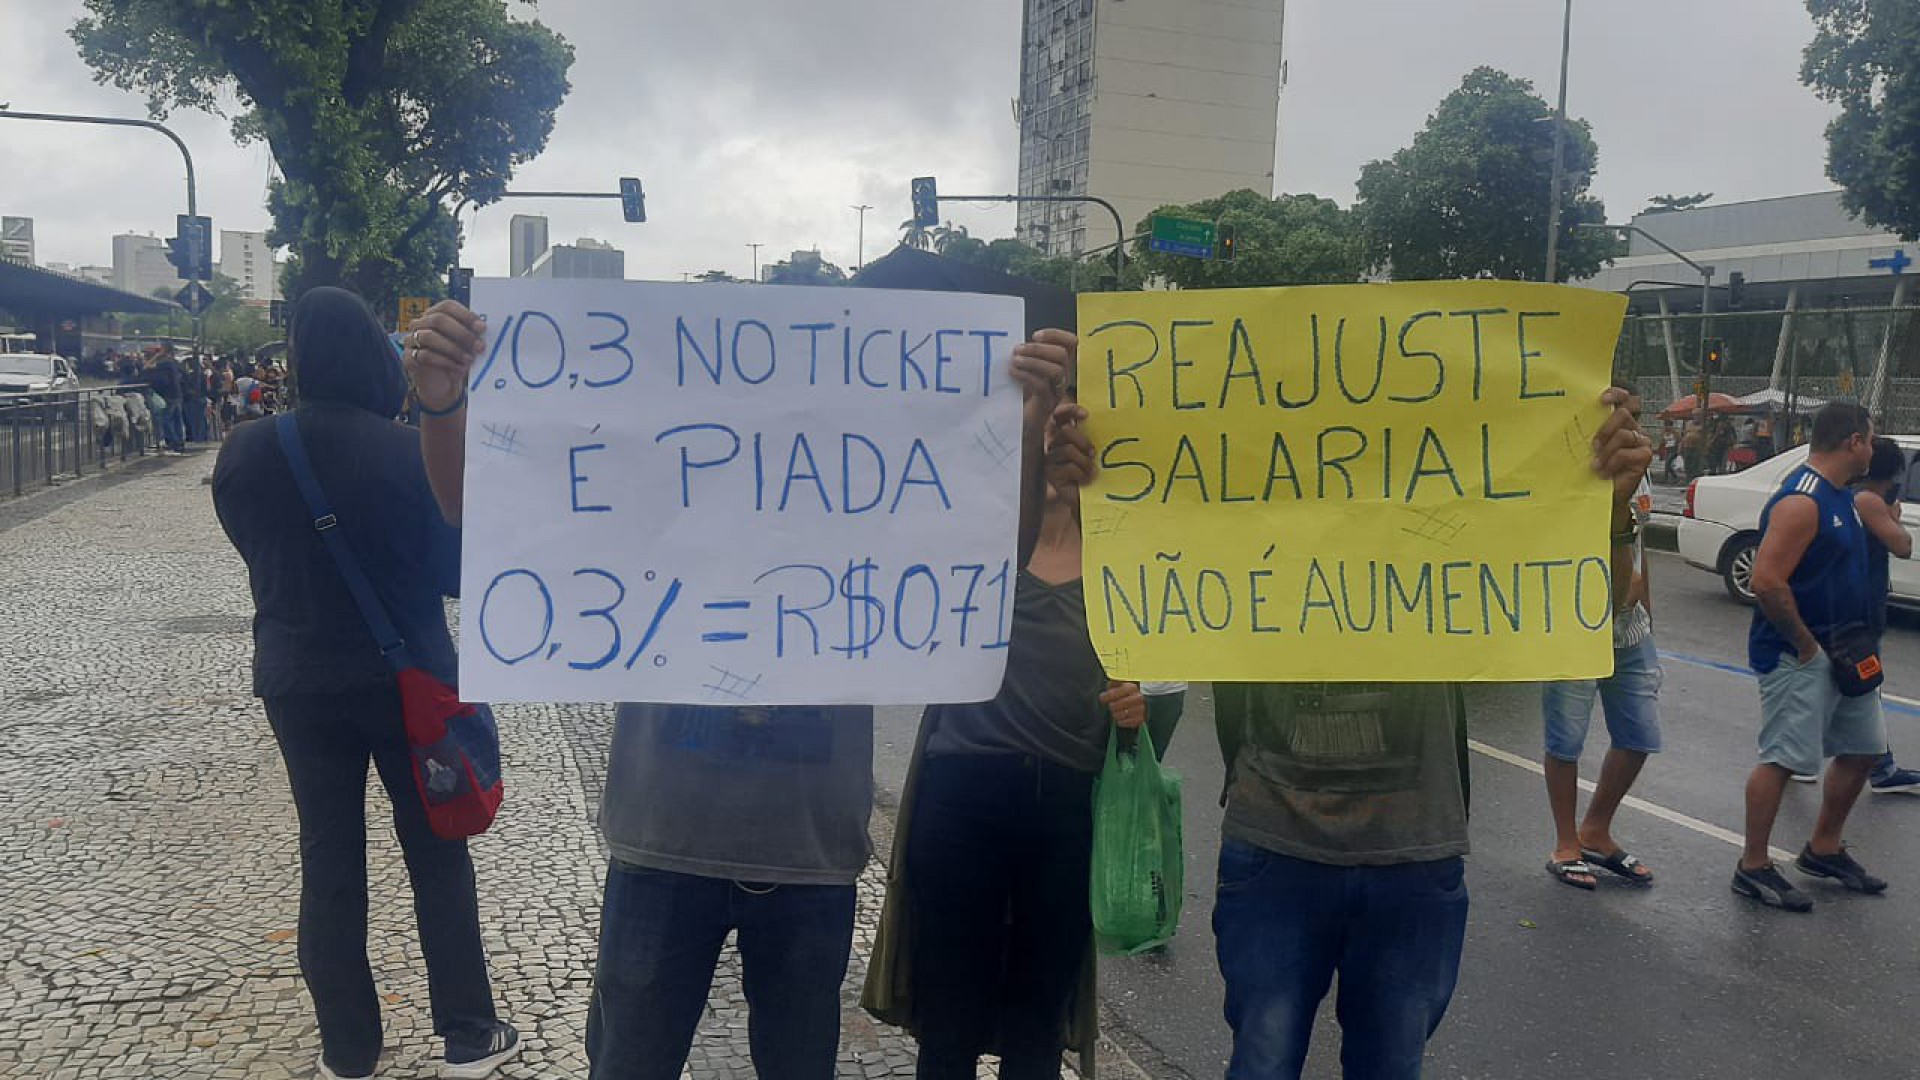 Protesto pedia por melhores condições de trabalho  - Redes Sociais / Divulgação